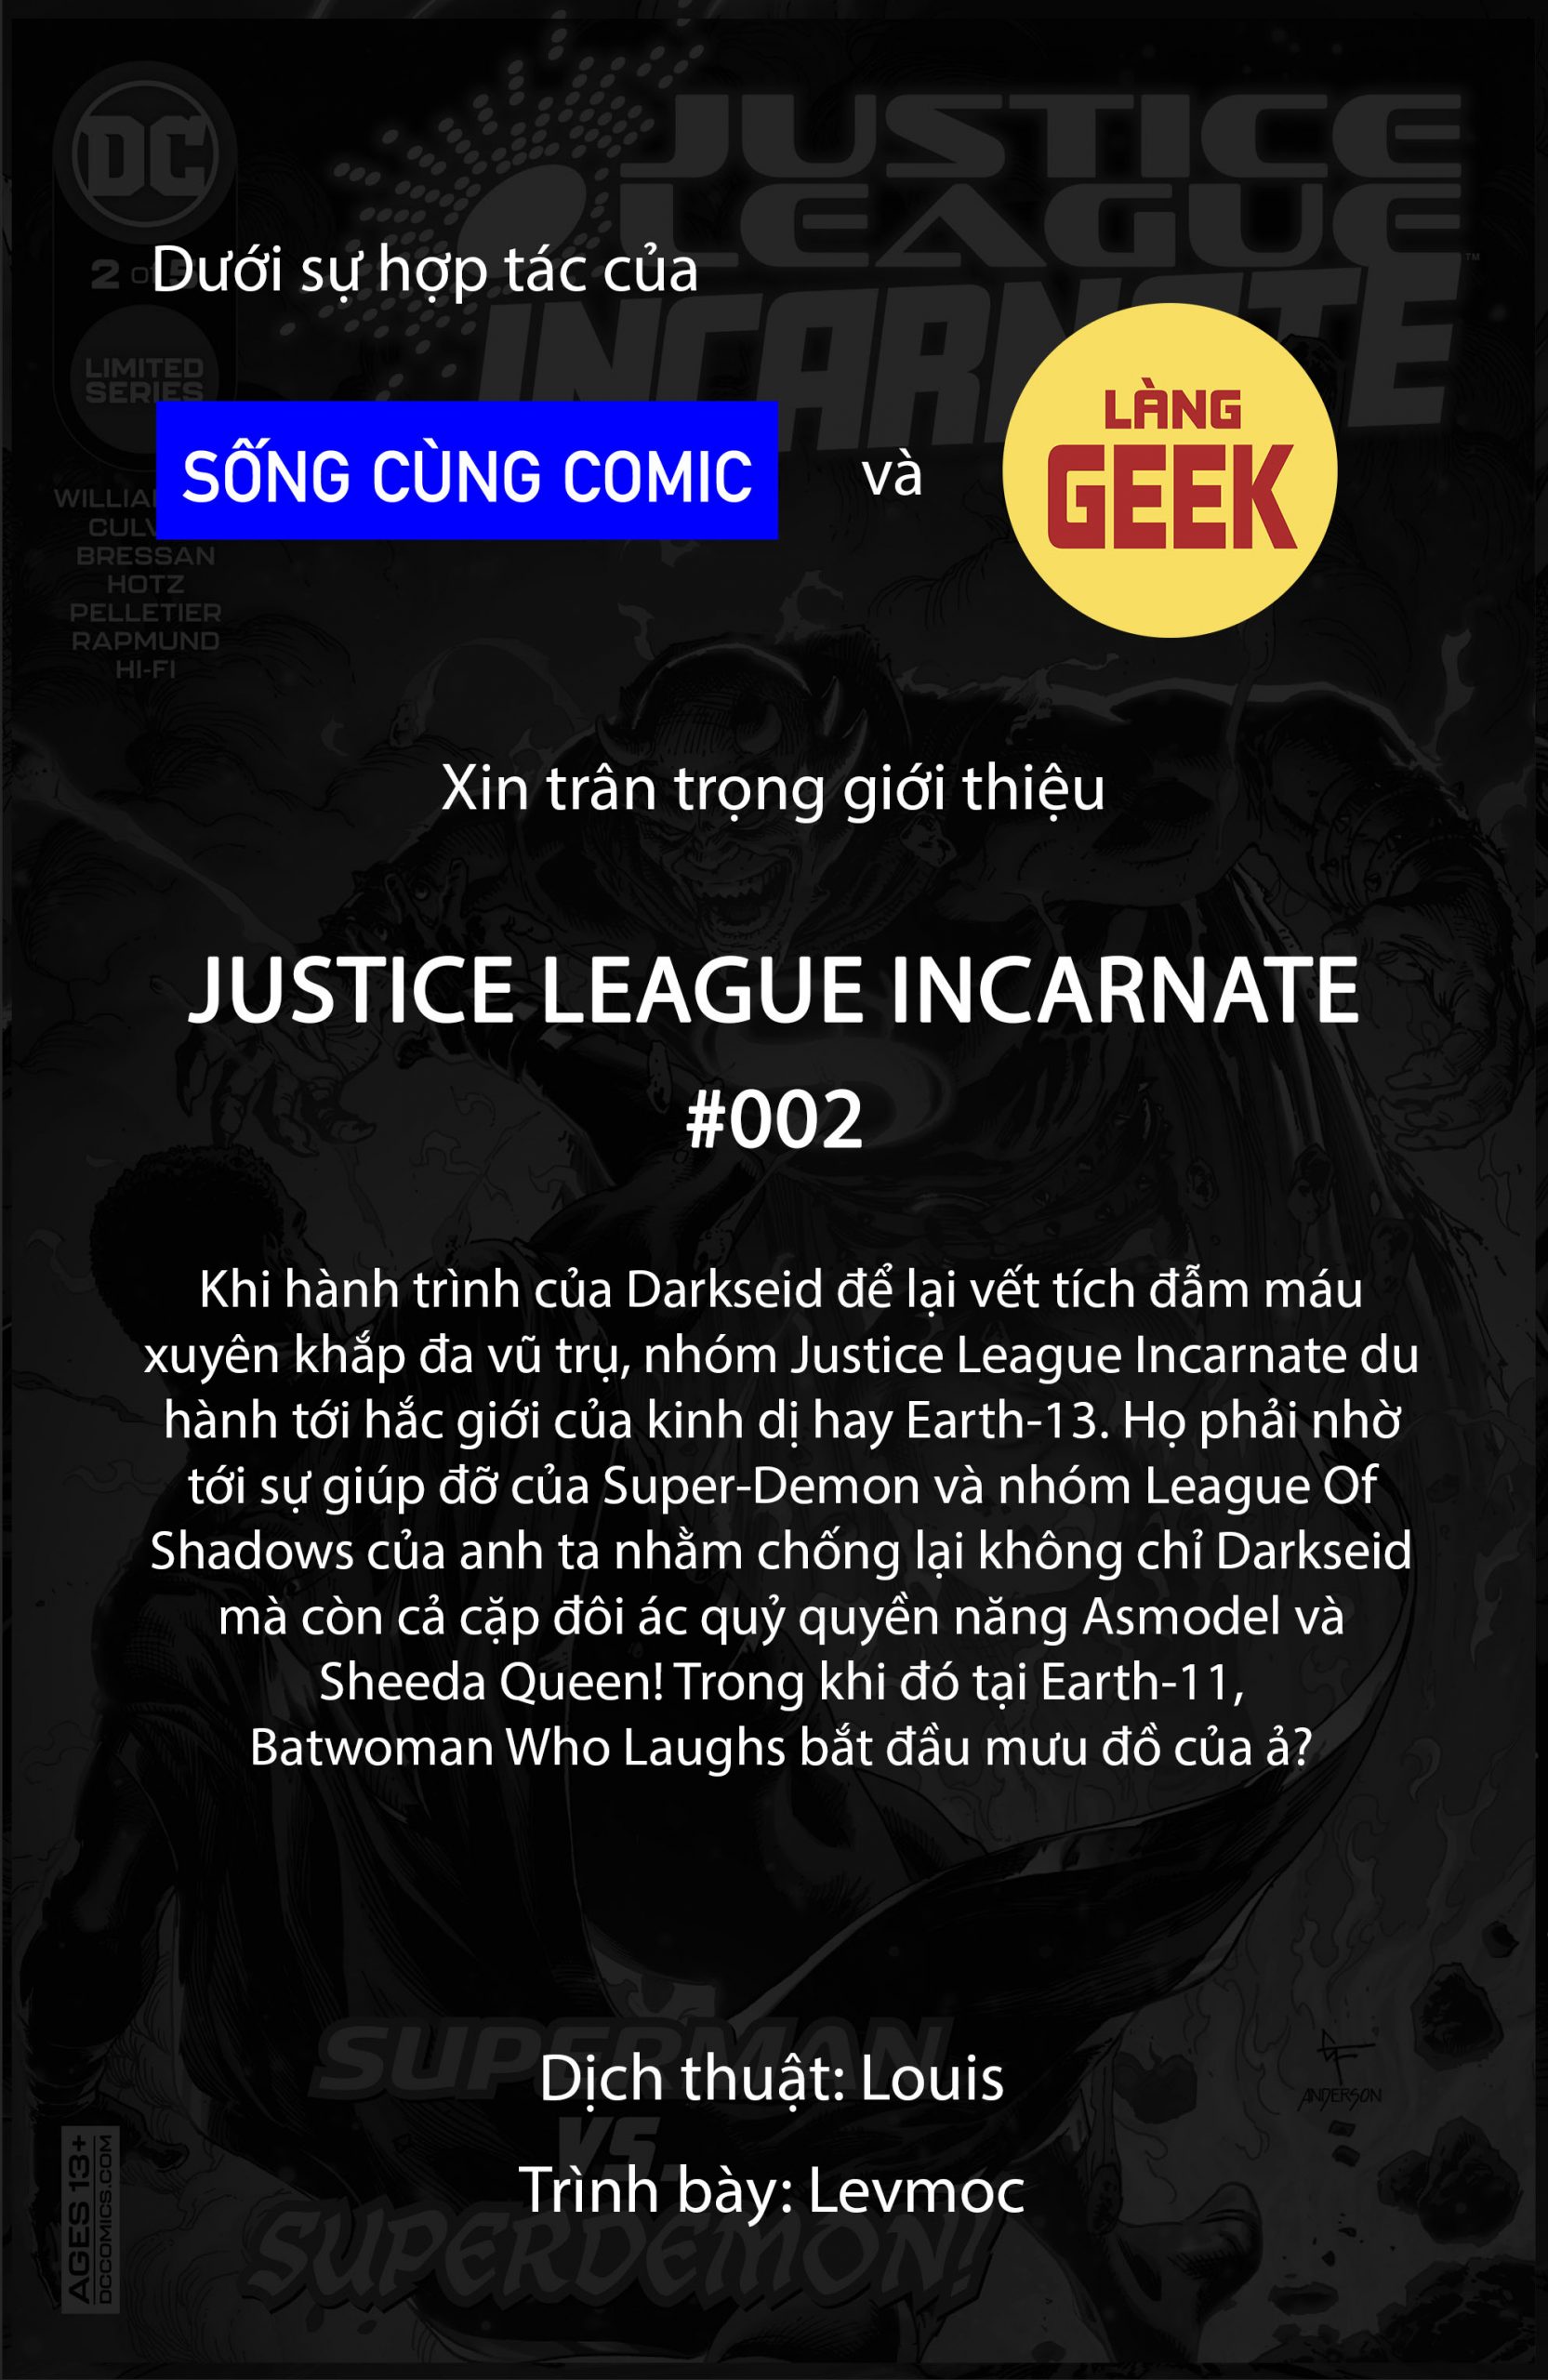 https://langgeek.net/wp-content/webpc-passthru.php?src=https://langgeek.net/wp-content/uploads/2021/12/Justice-League-Incarnate-2021-002-001-scaled.jpg&nocache=1